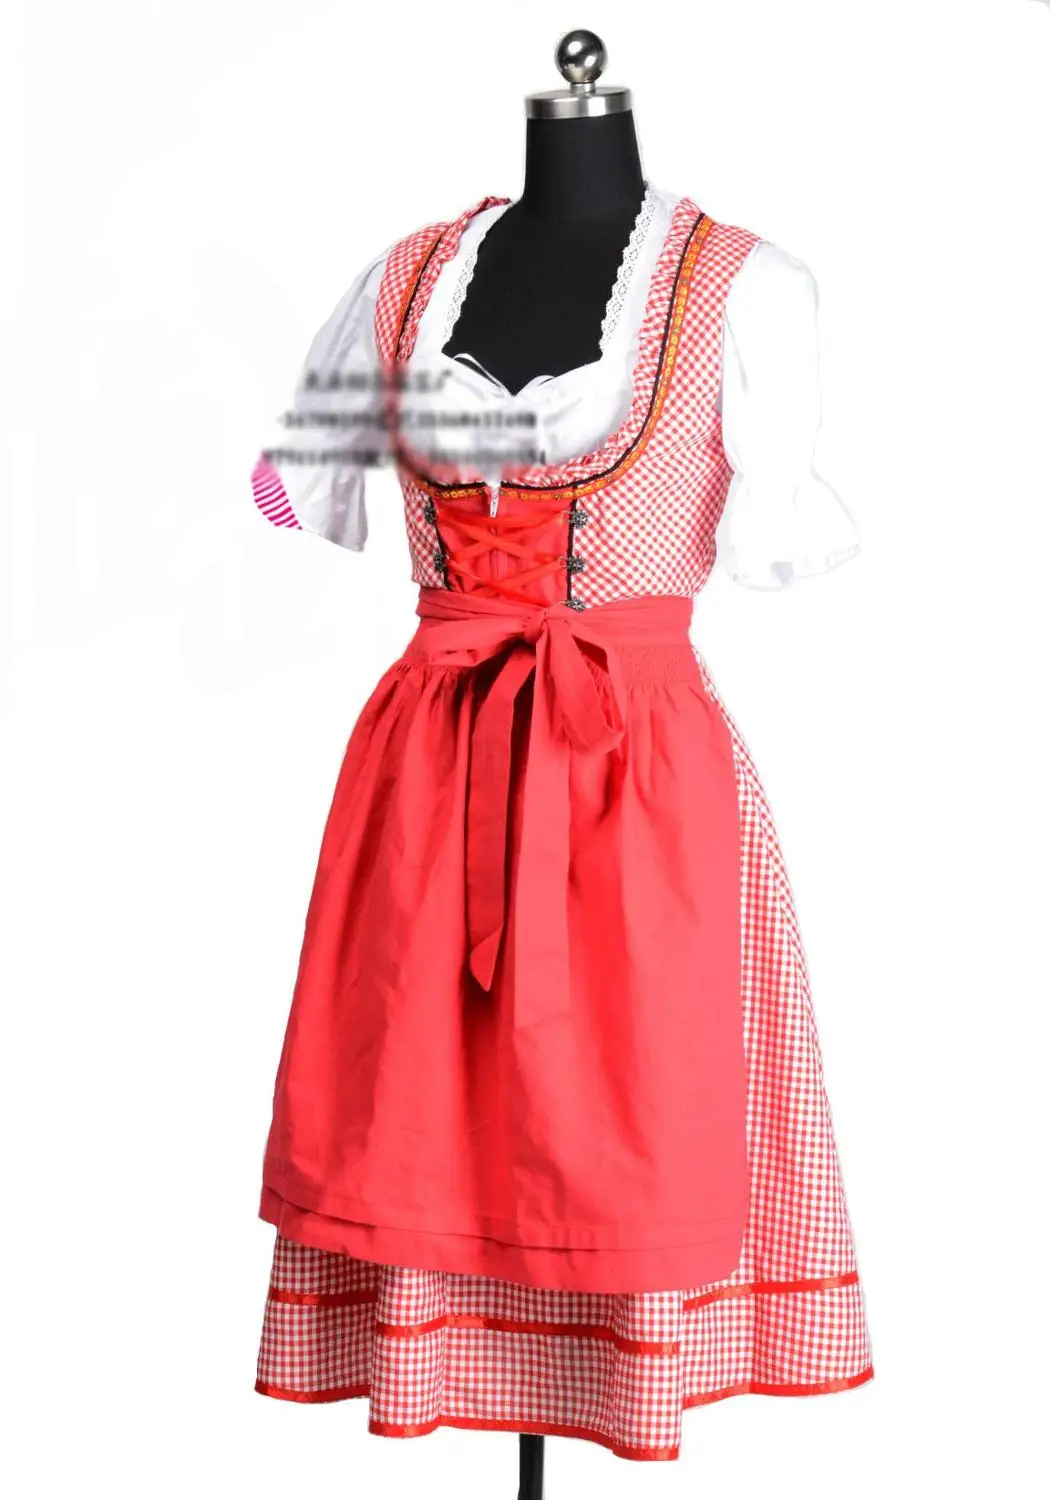 Дамы Октоберфест дирндль таверниер фестиваль карнавальный костюм Deguisement короткие 3 шт. официантка пиво горничной девушка нарядное платье - Цвет: Style 2